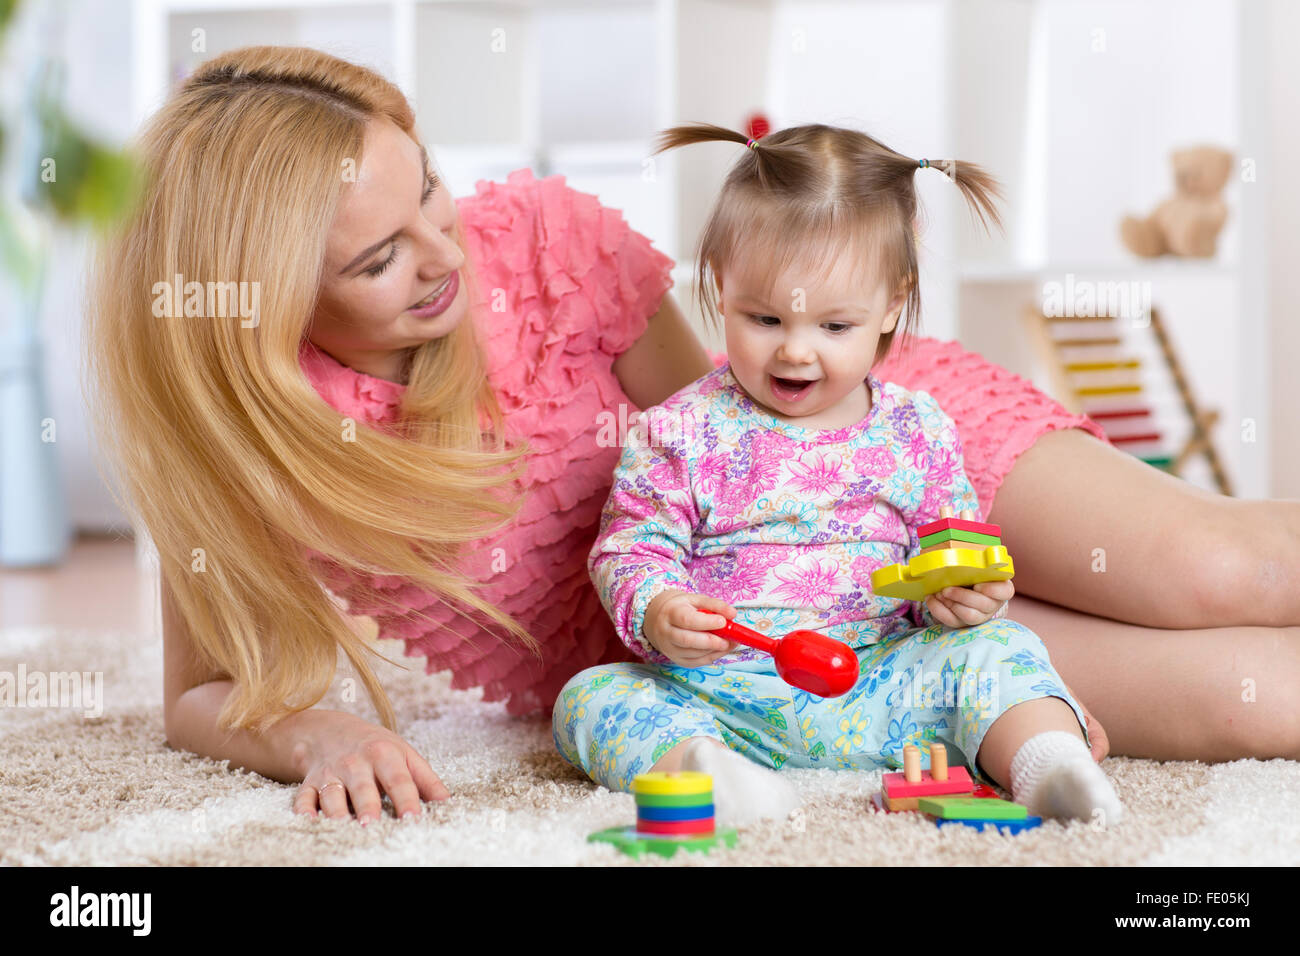 Bébé jouant avec sa mère sur un tapis en maternelle Banque D'Images